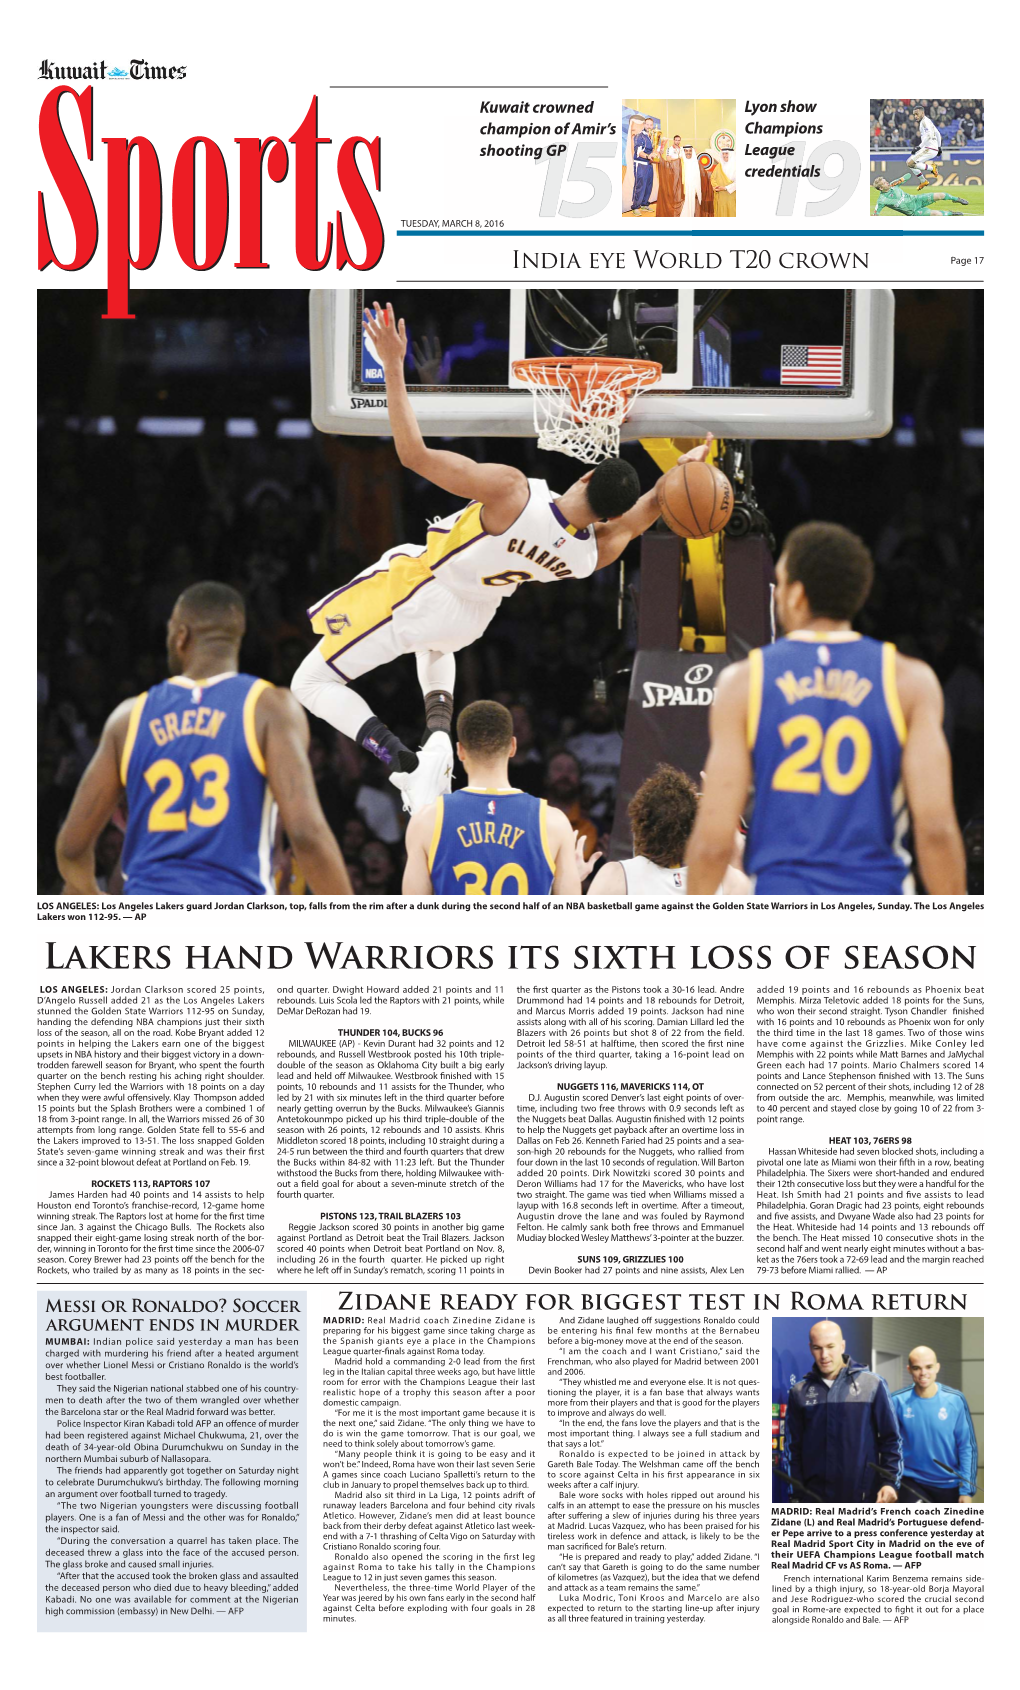 Lakers Hand Warriors Its Sixth Loss of Season